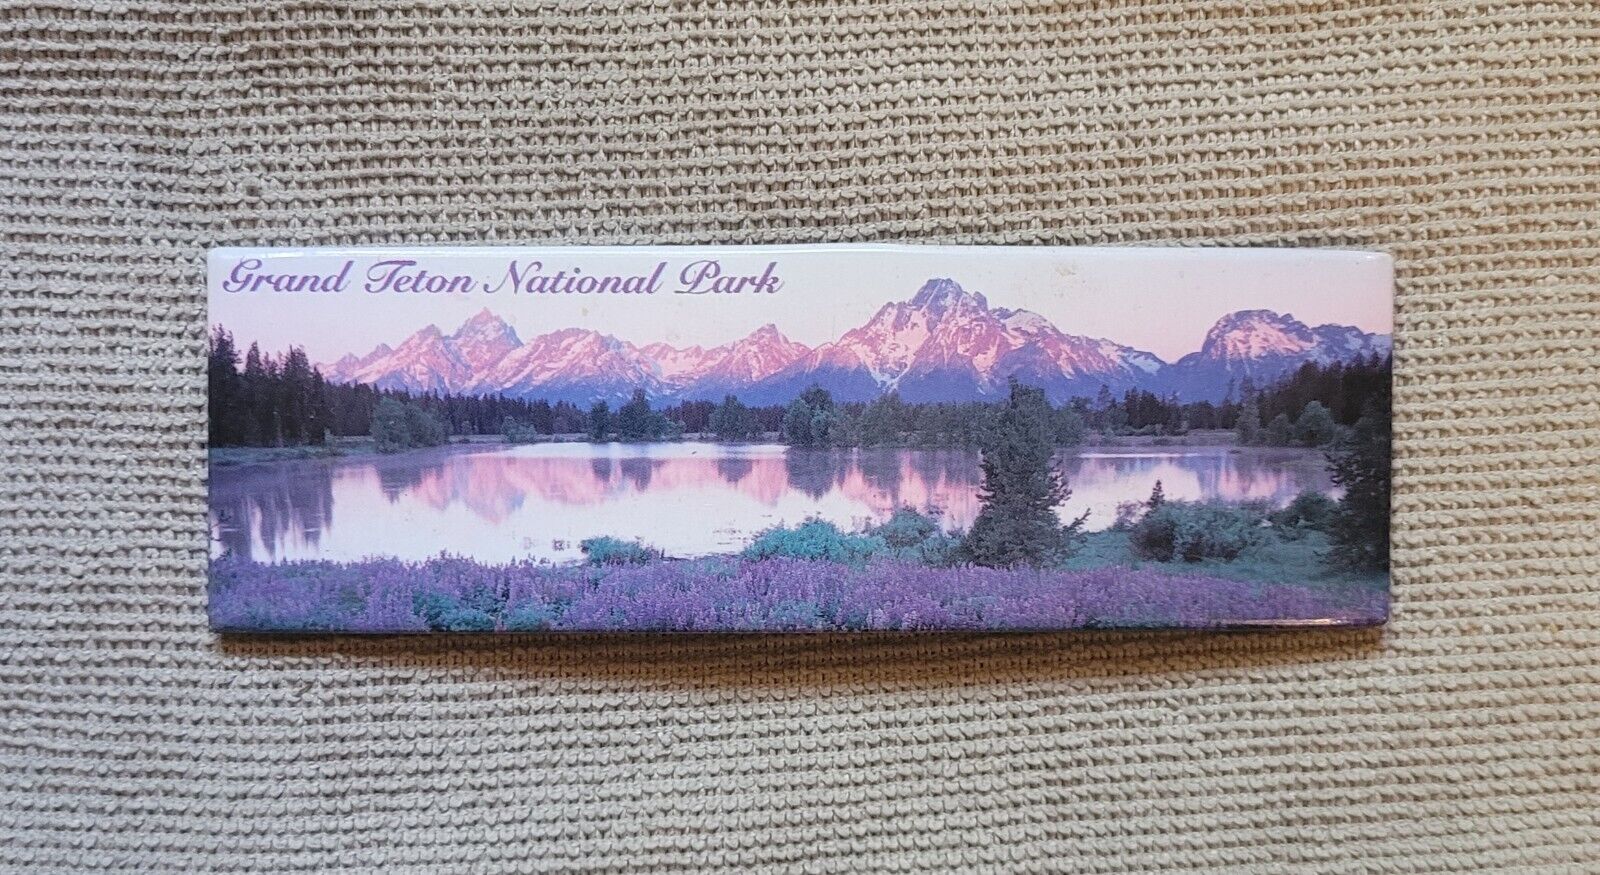 Grand Teton National Park Refrigerator Magnet Souvenir Photo 